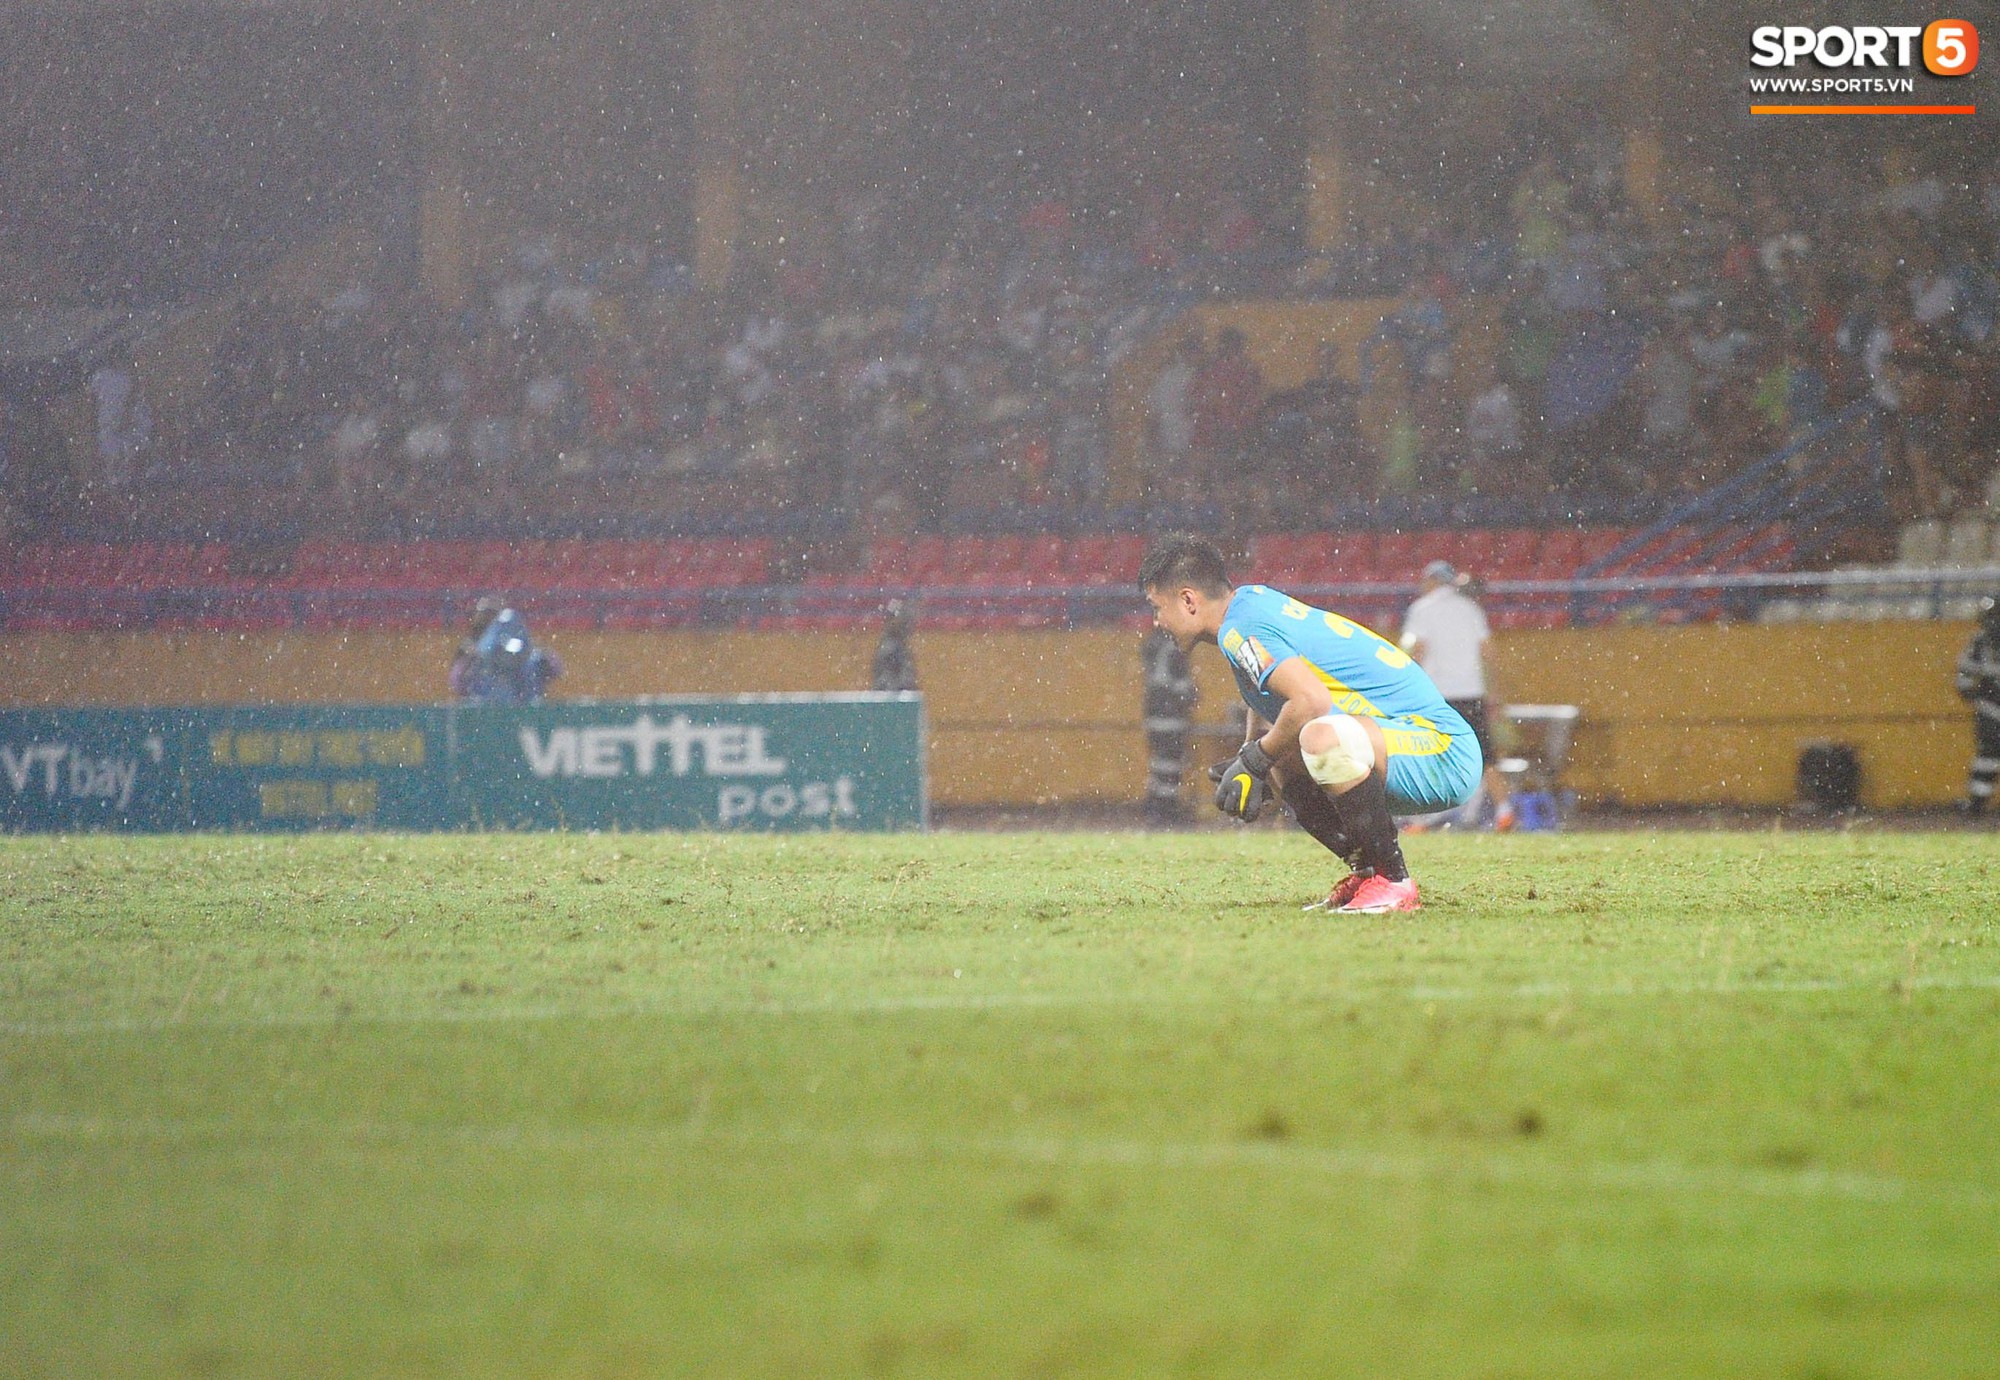 Thủ môn trẻ tài năng của U23 Việt Nam nhận lời cảnh báo sau trận thuỷ chiến trên sân Hàng Đẫy - Ảnh 2.